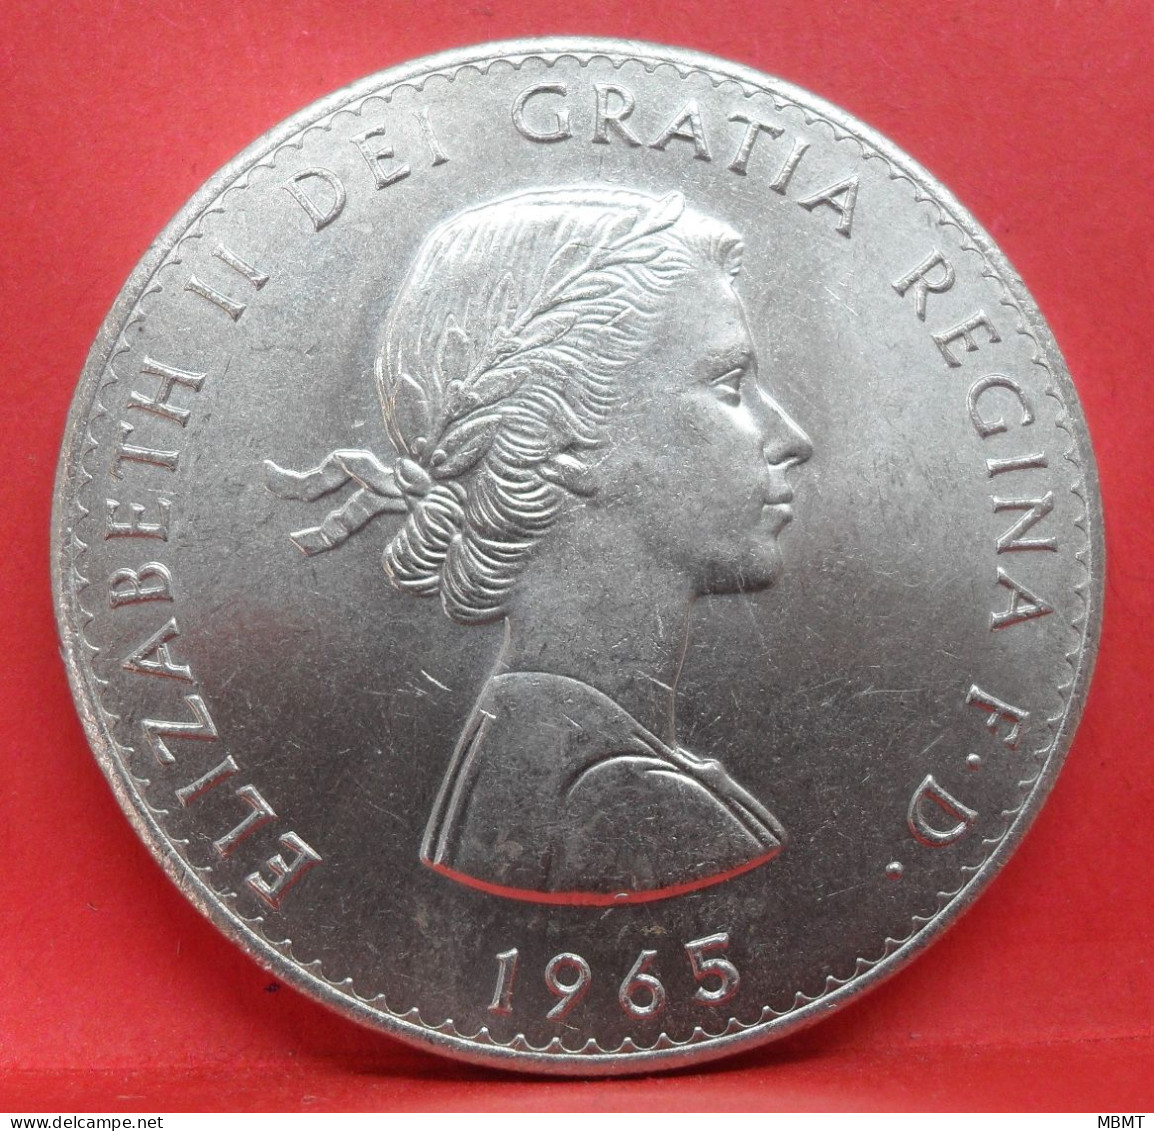 1 Crown 1965 - SUP - Pièce Monnaie Grande-Bretagne - Article N°2897 - L. 1 Crown